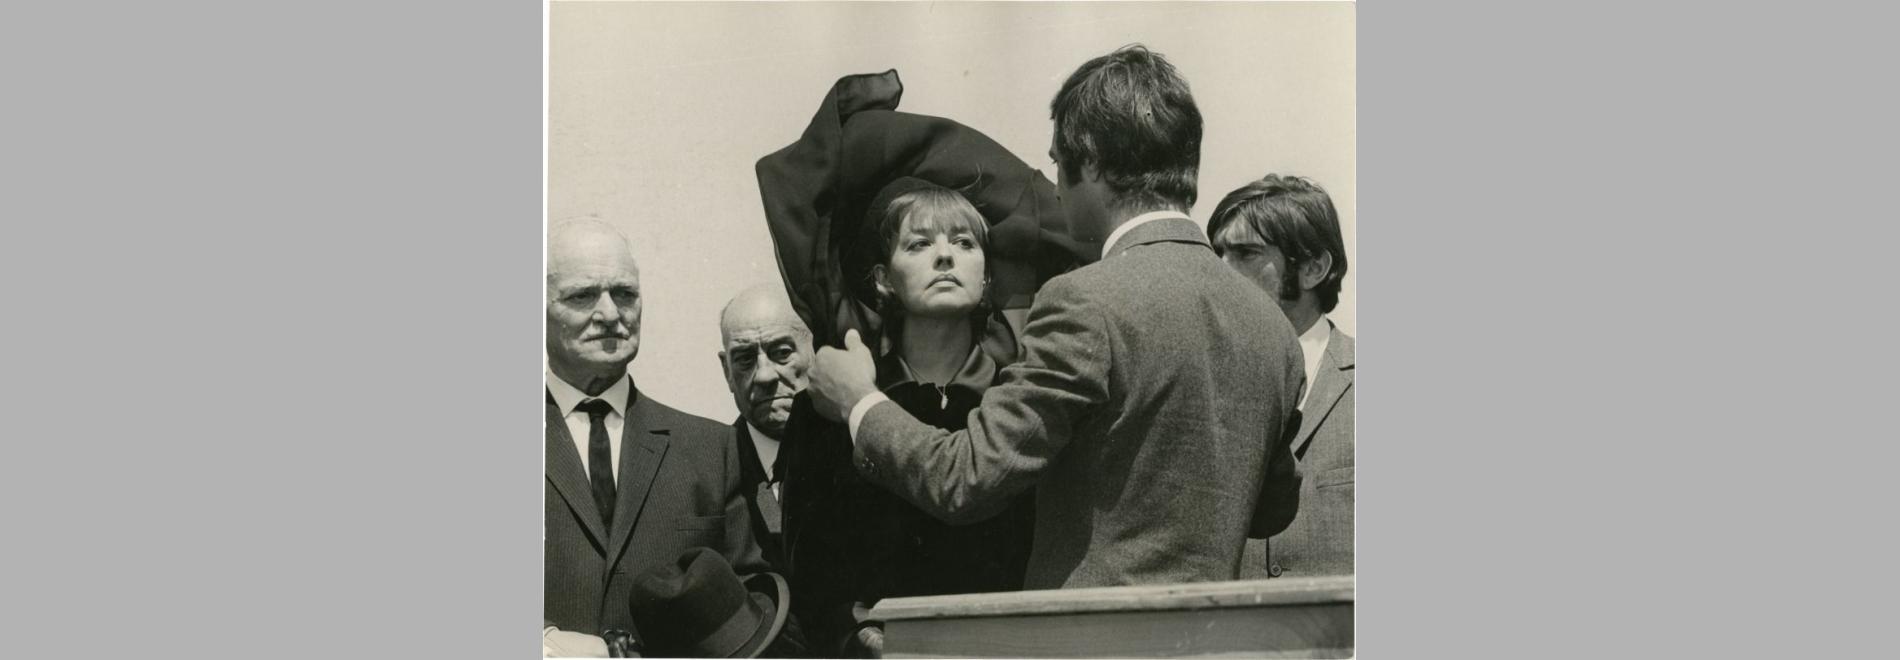 La mariée était en noir (François Truffaut, 1967)